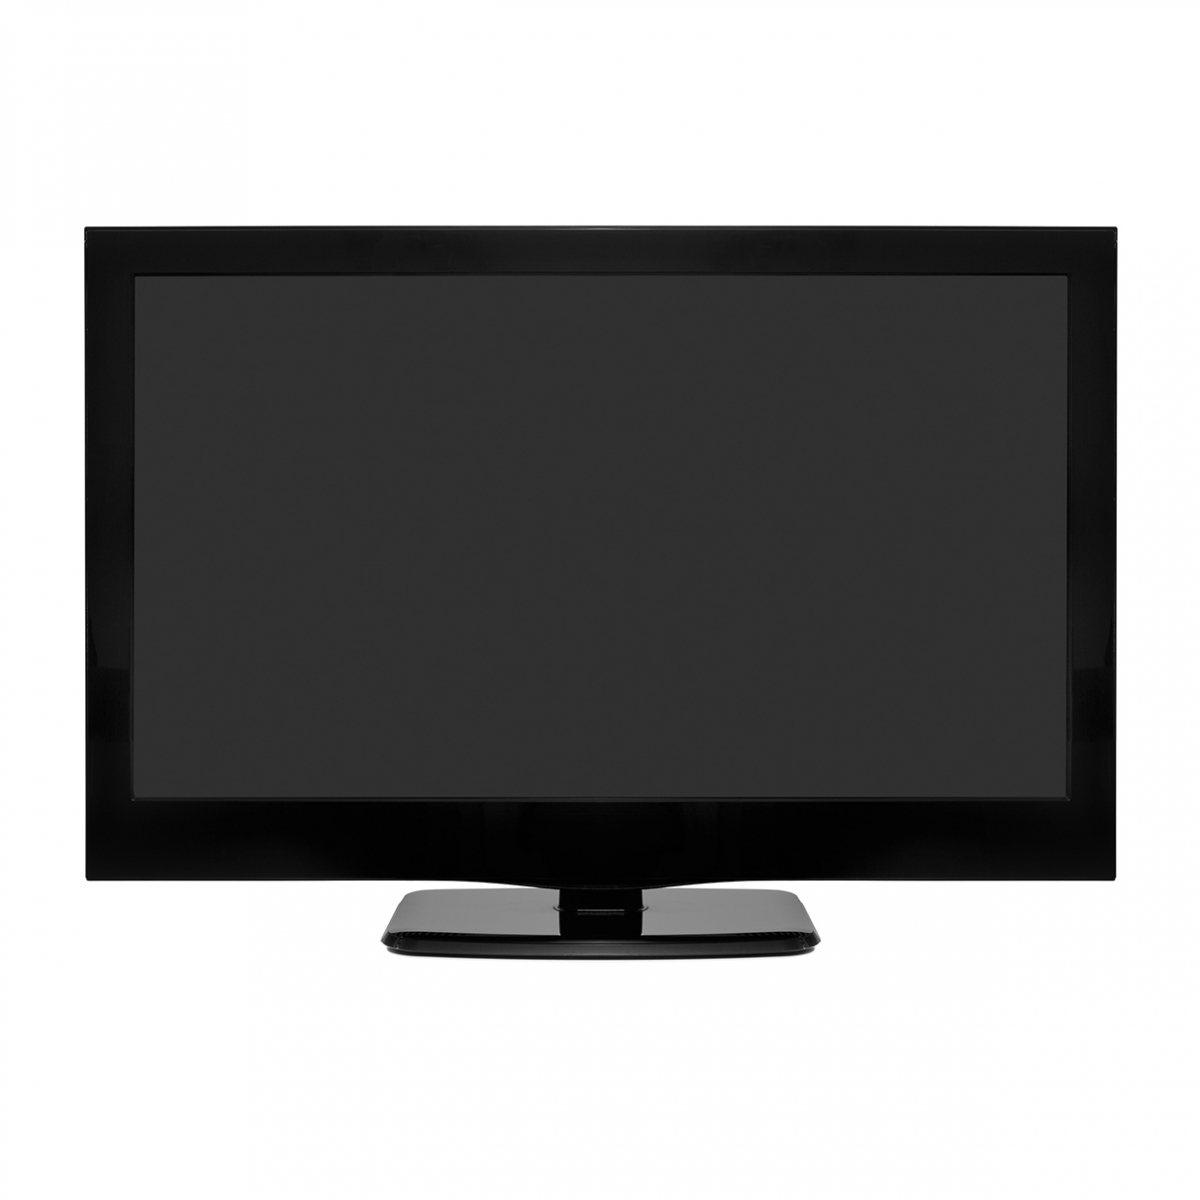 Imagen en la que se ve una televisión de pantalla plana en perspectiva frontal